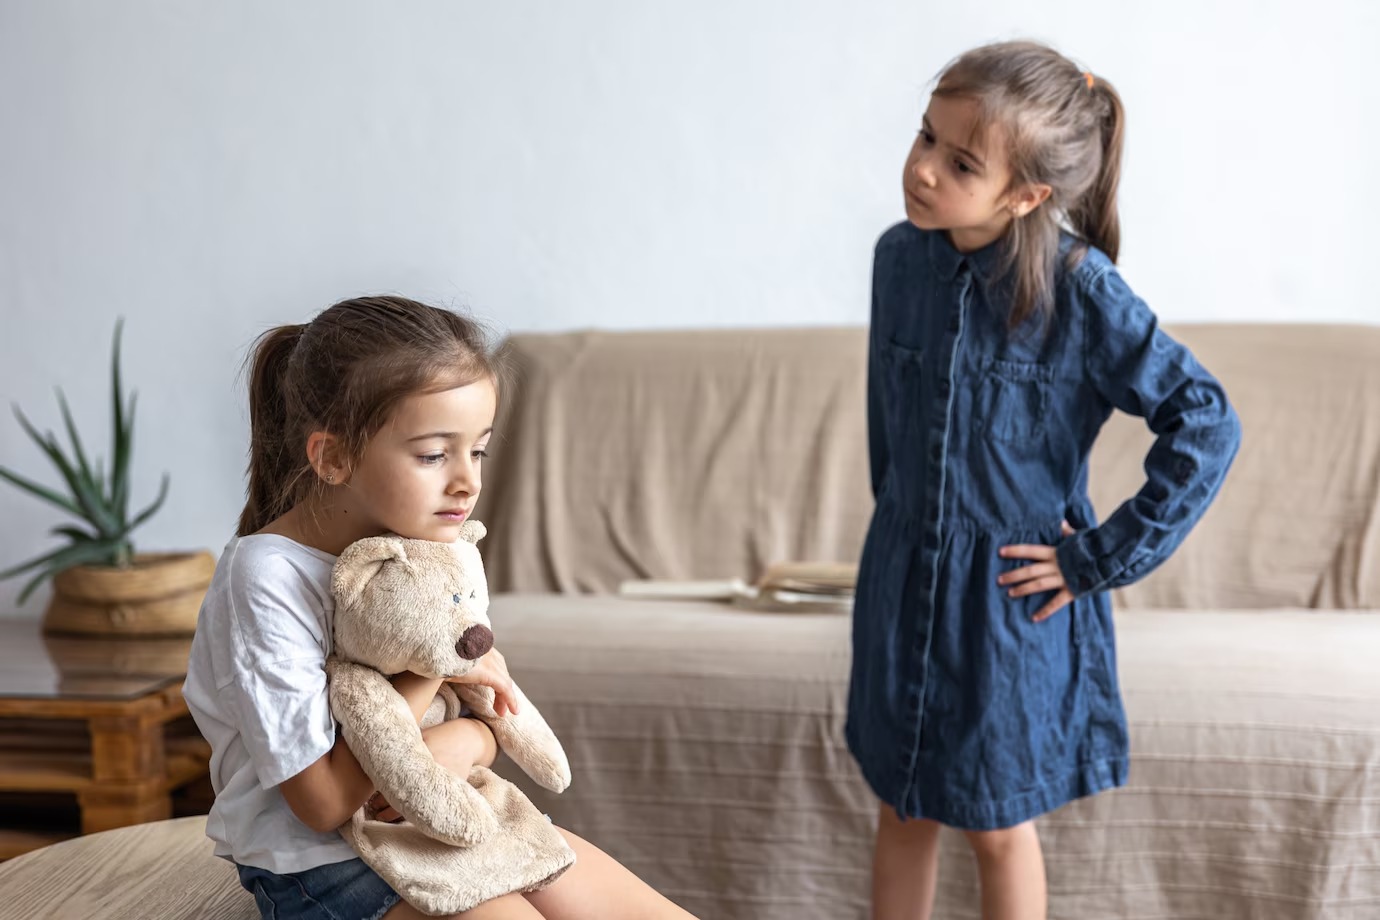 Психолог Вронский: Жестокое поведение детей связано с недостатком воспитания